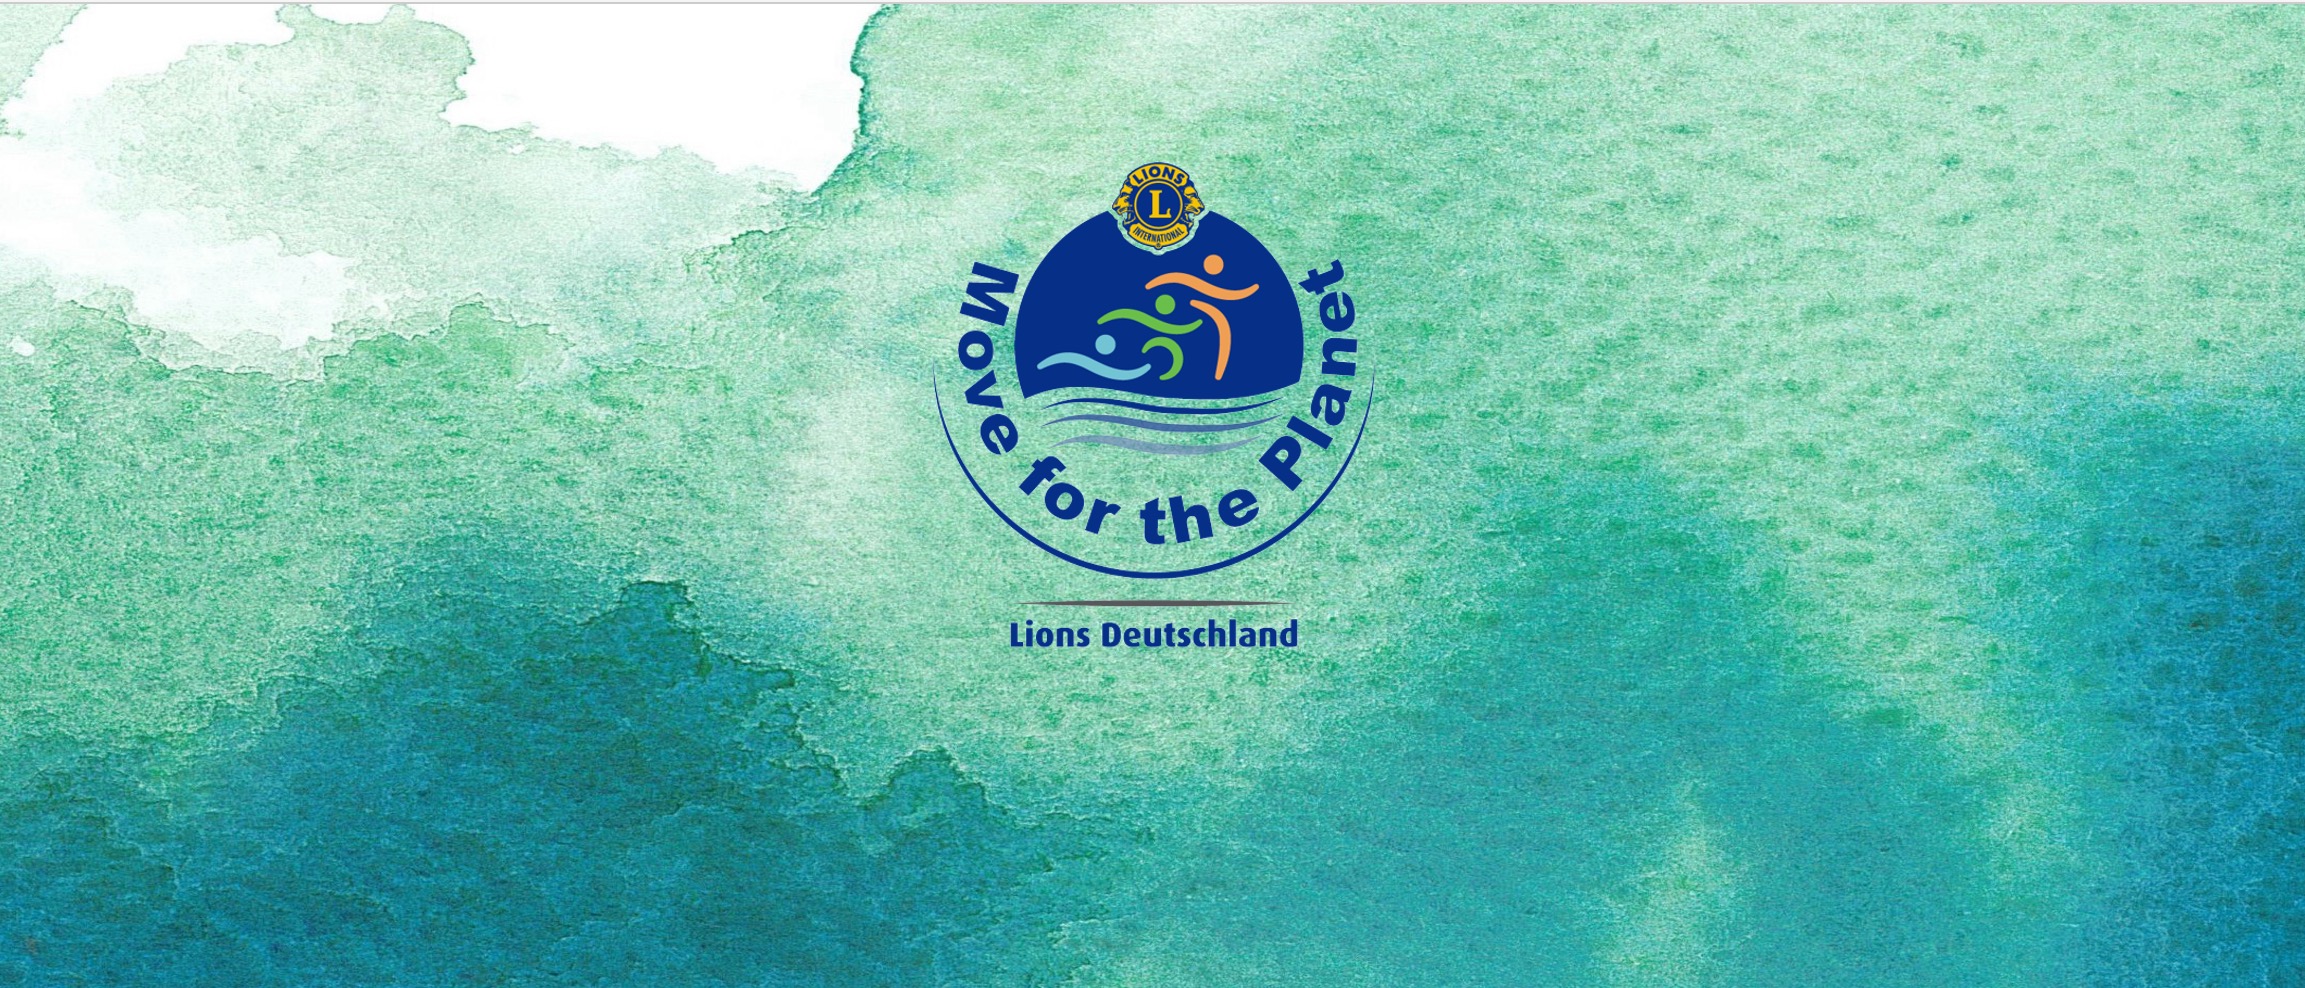 Aquarellbild mit verlaufenden Farben blau und grün. In der Mitte das Logo des Lions-Lauf Move for the Planet – Lions Deutschland